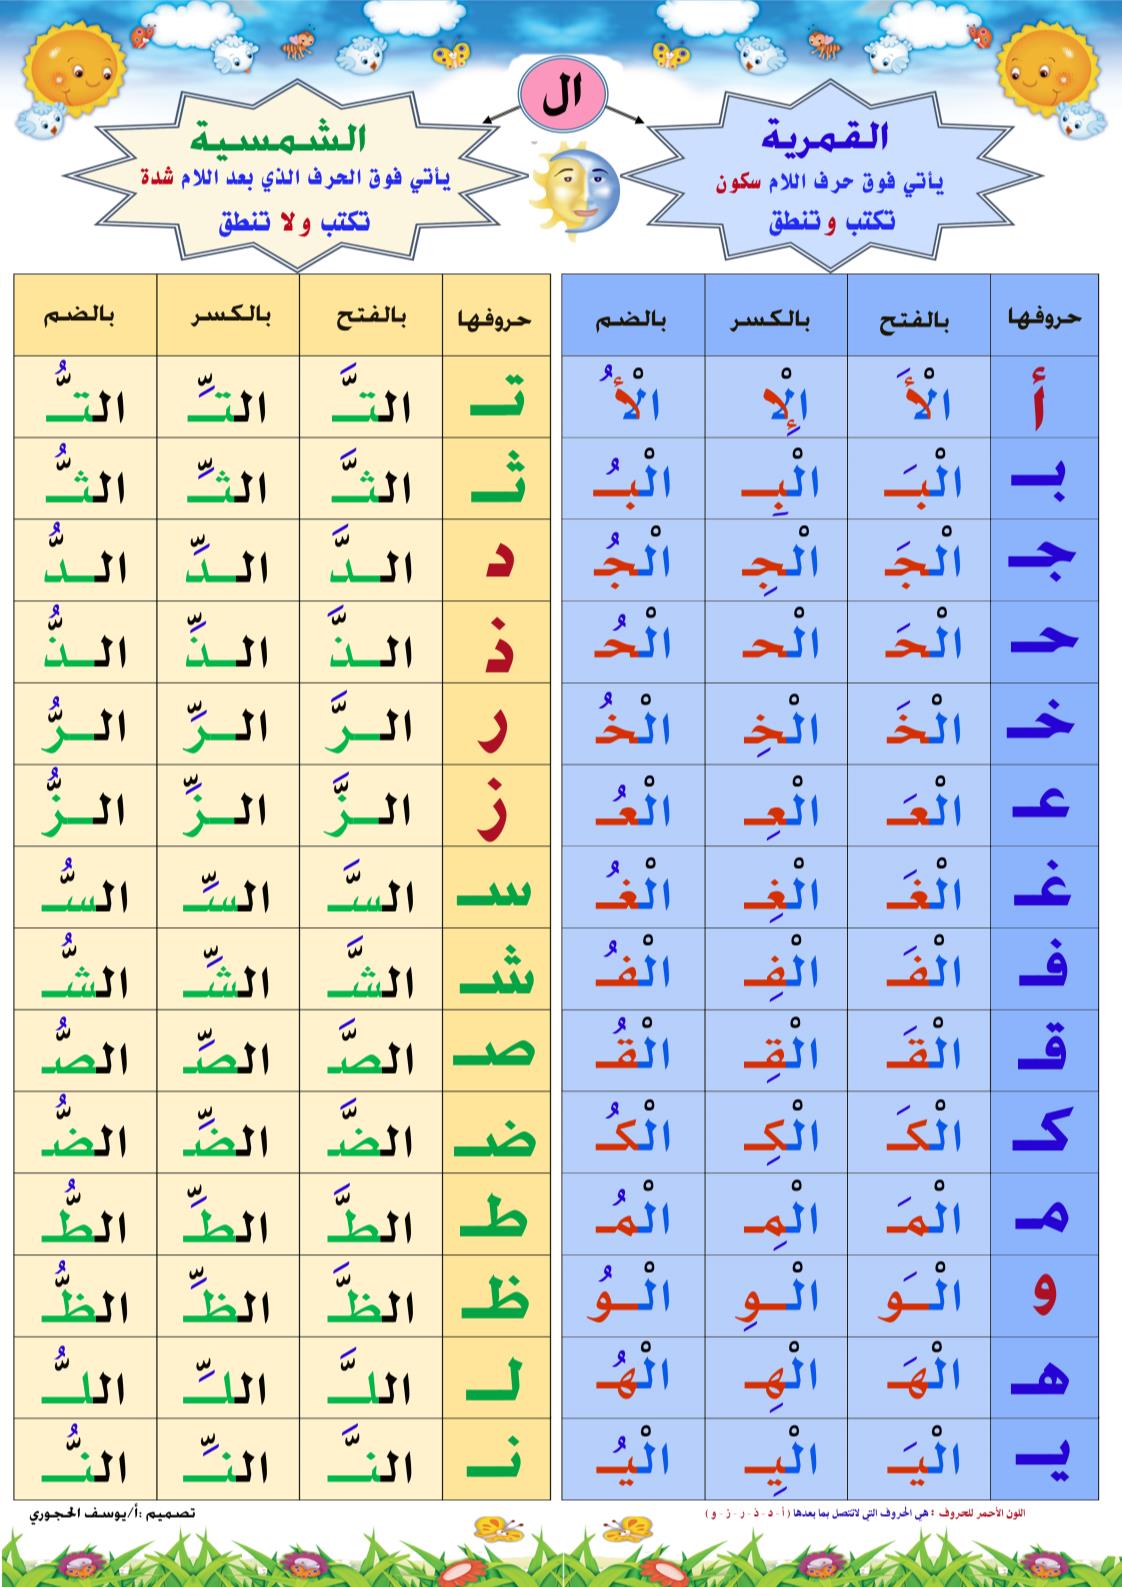 اللغة العربية (اللام الشمسية واللام القمرية) للصف الأول ملفاتي